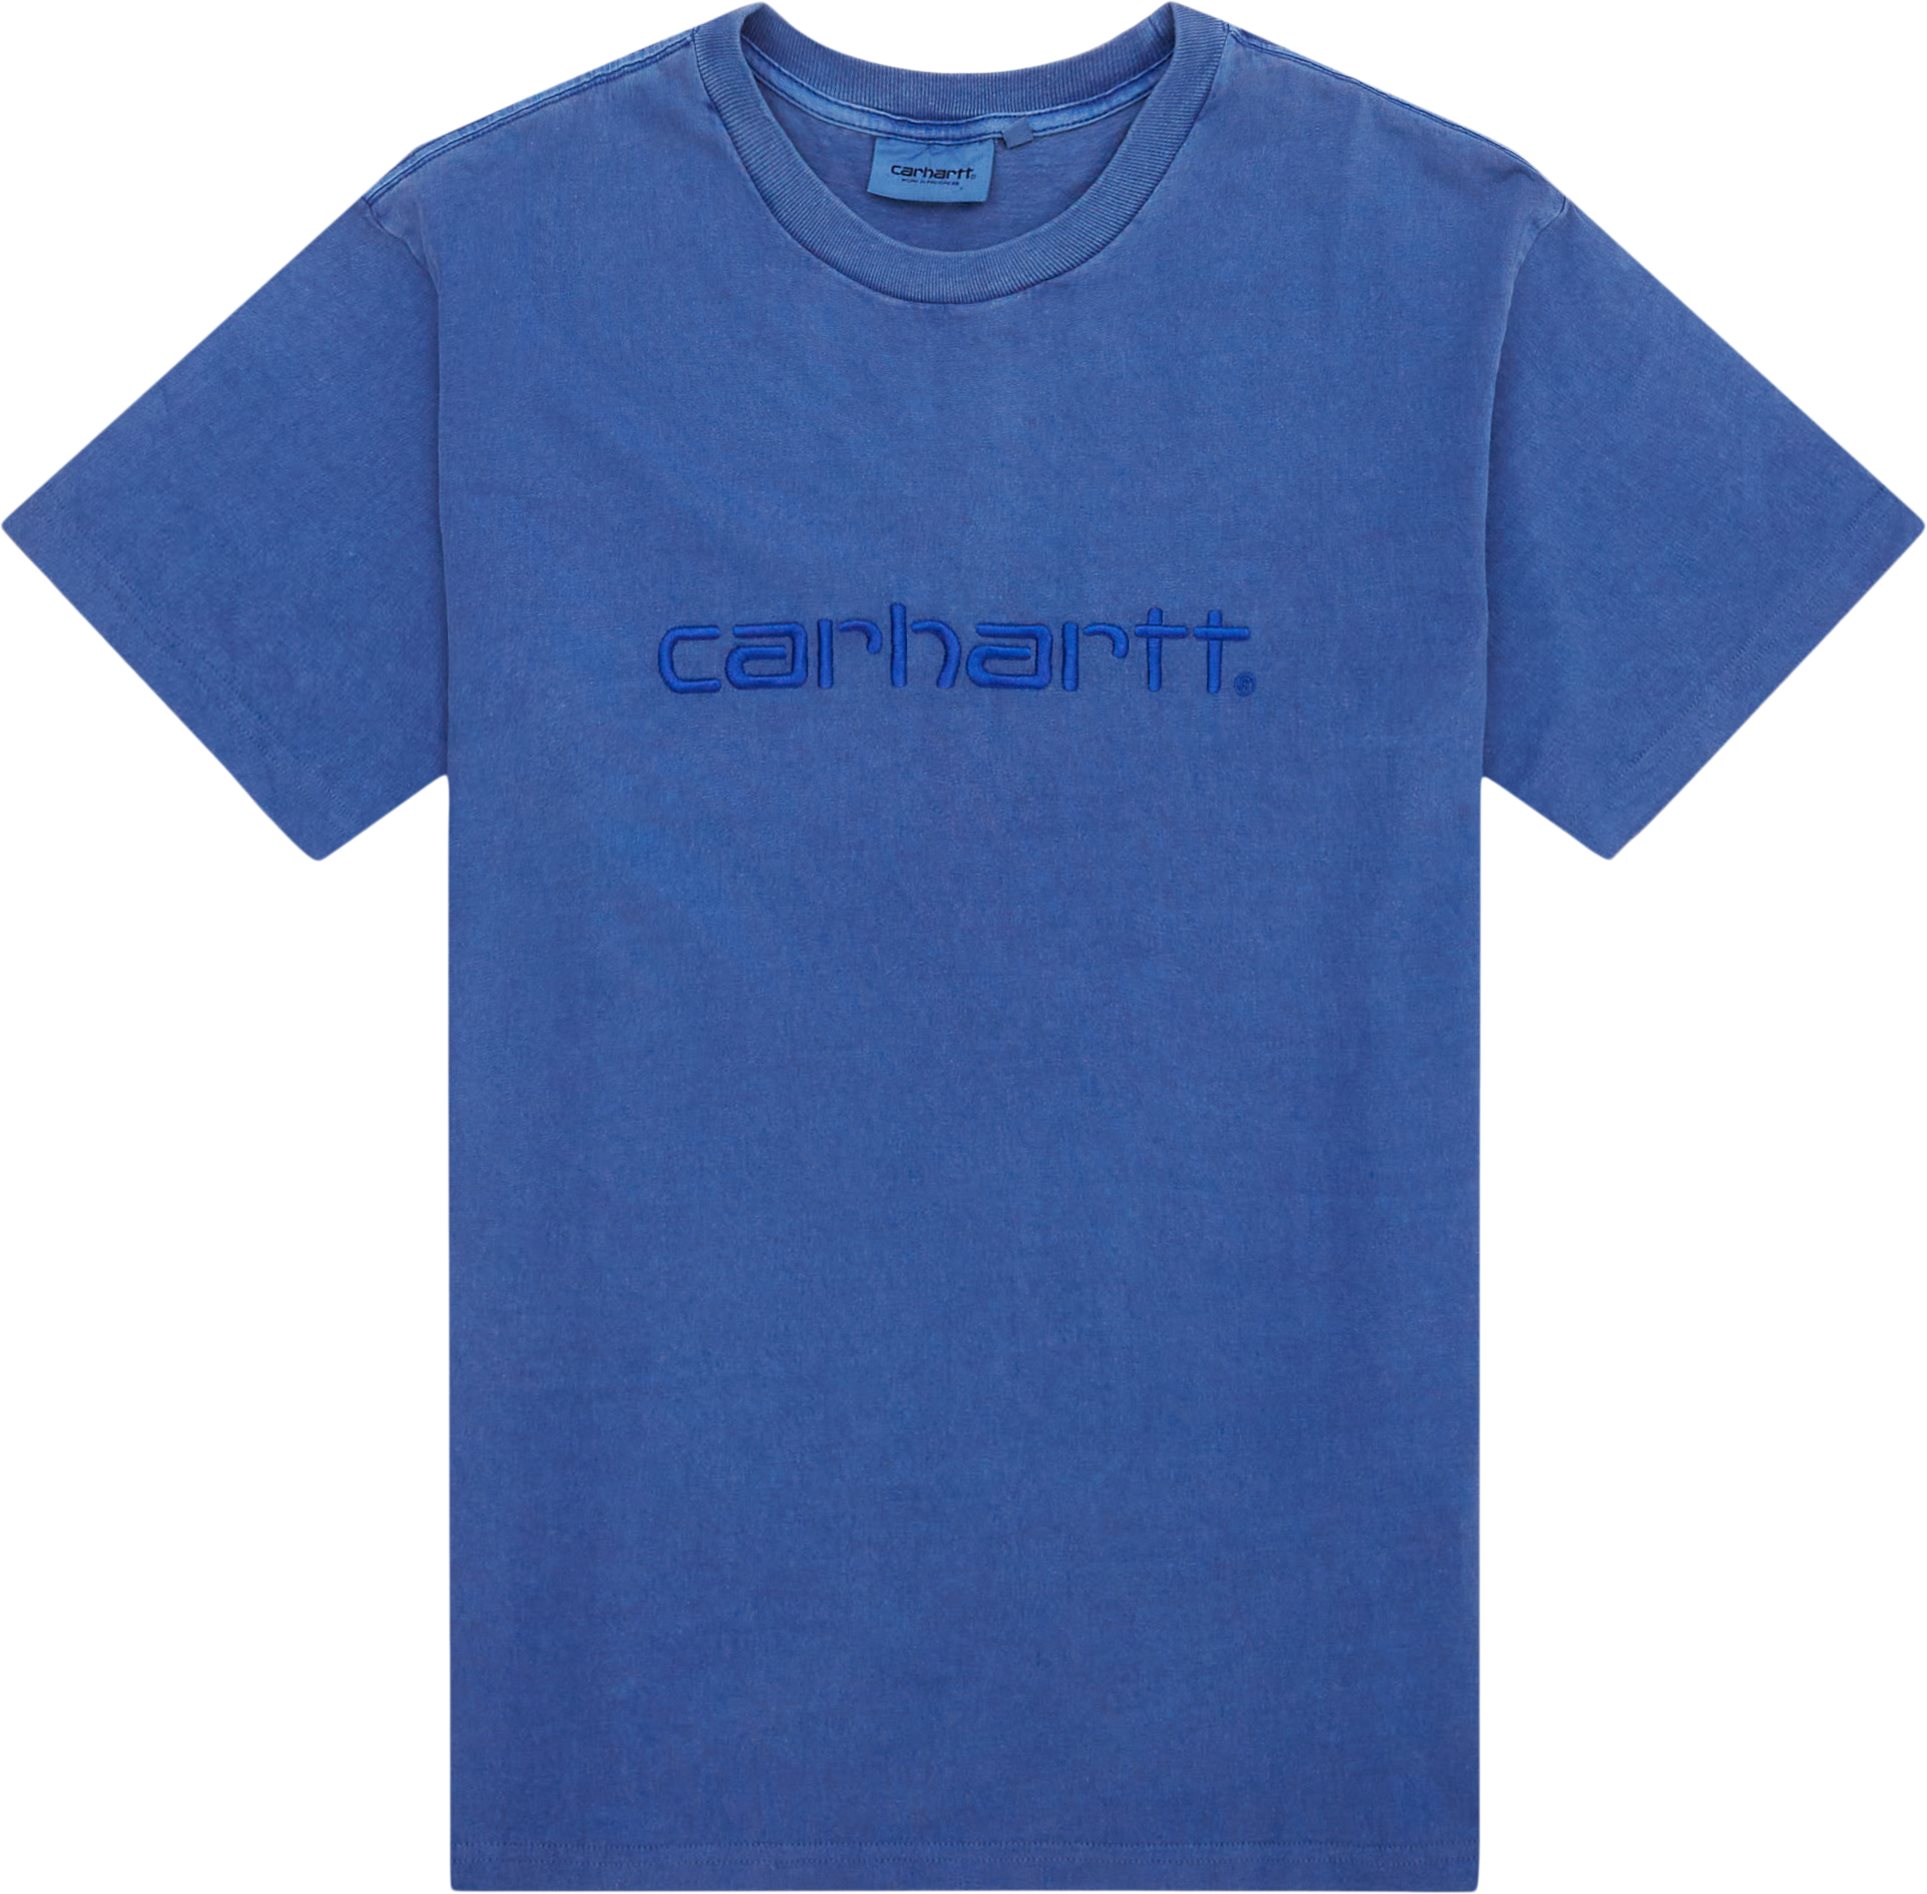 Carhartt WIP T-shirts